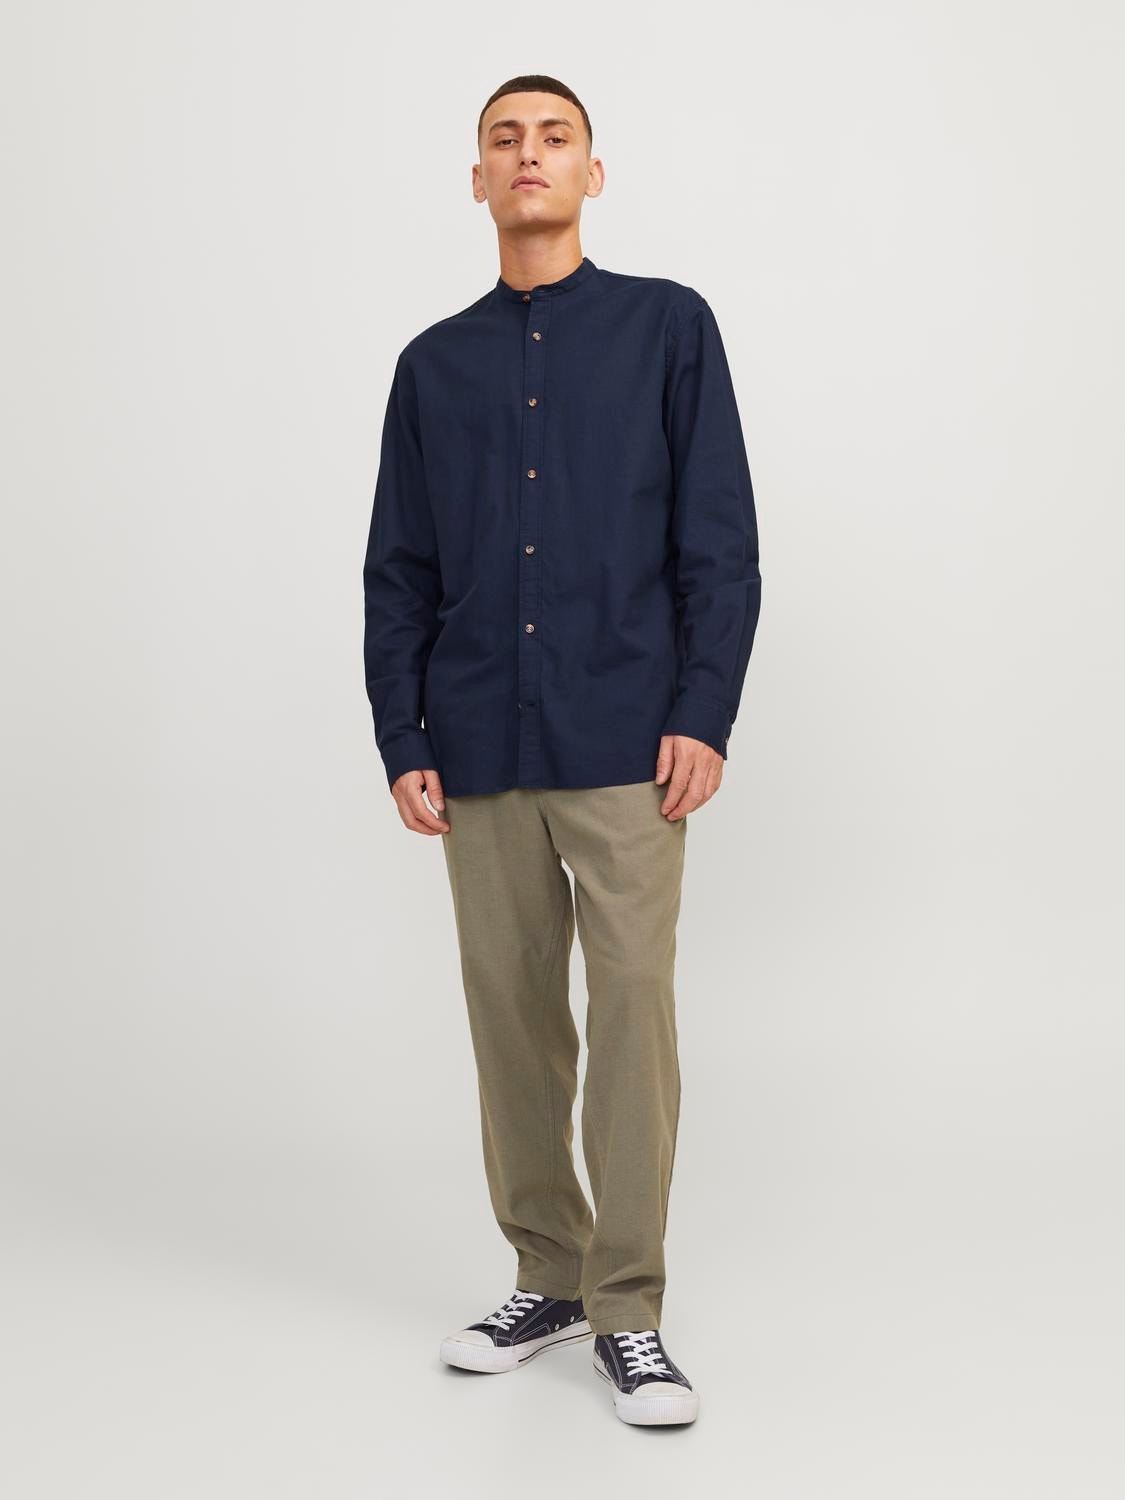 Jack & Jones Comfort Fit Shirt -Navy Blazer - 12248385